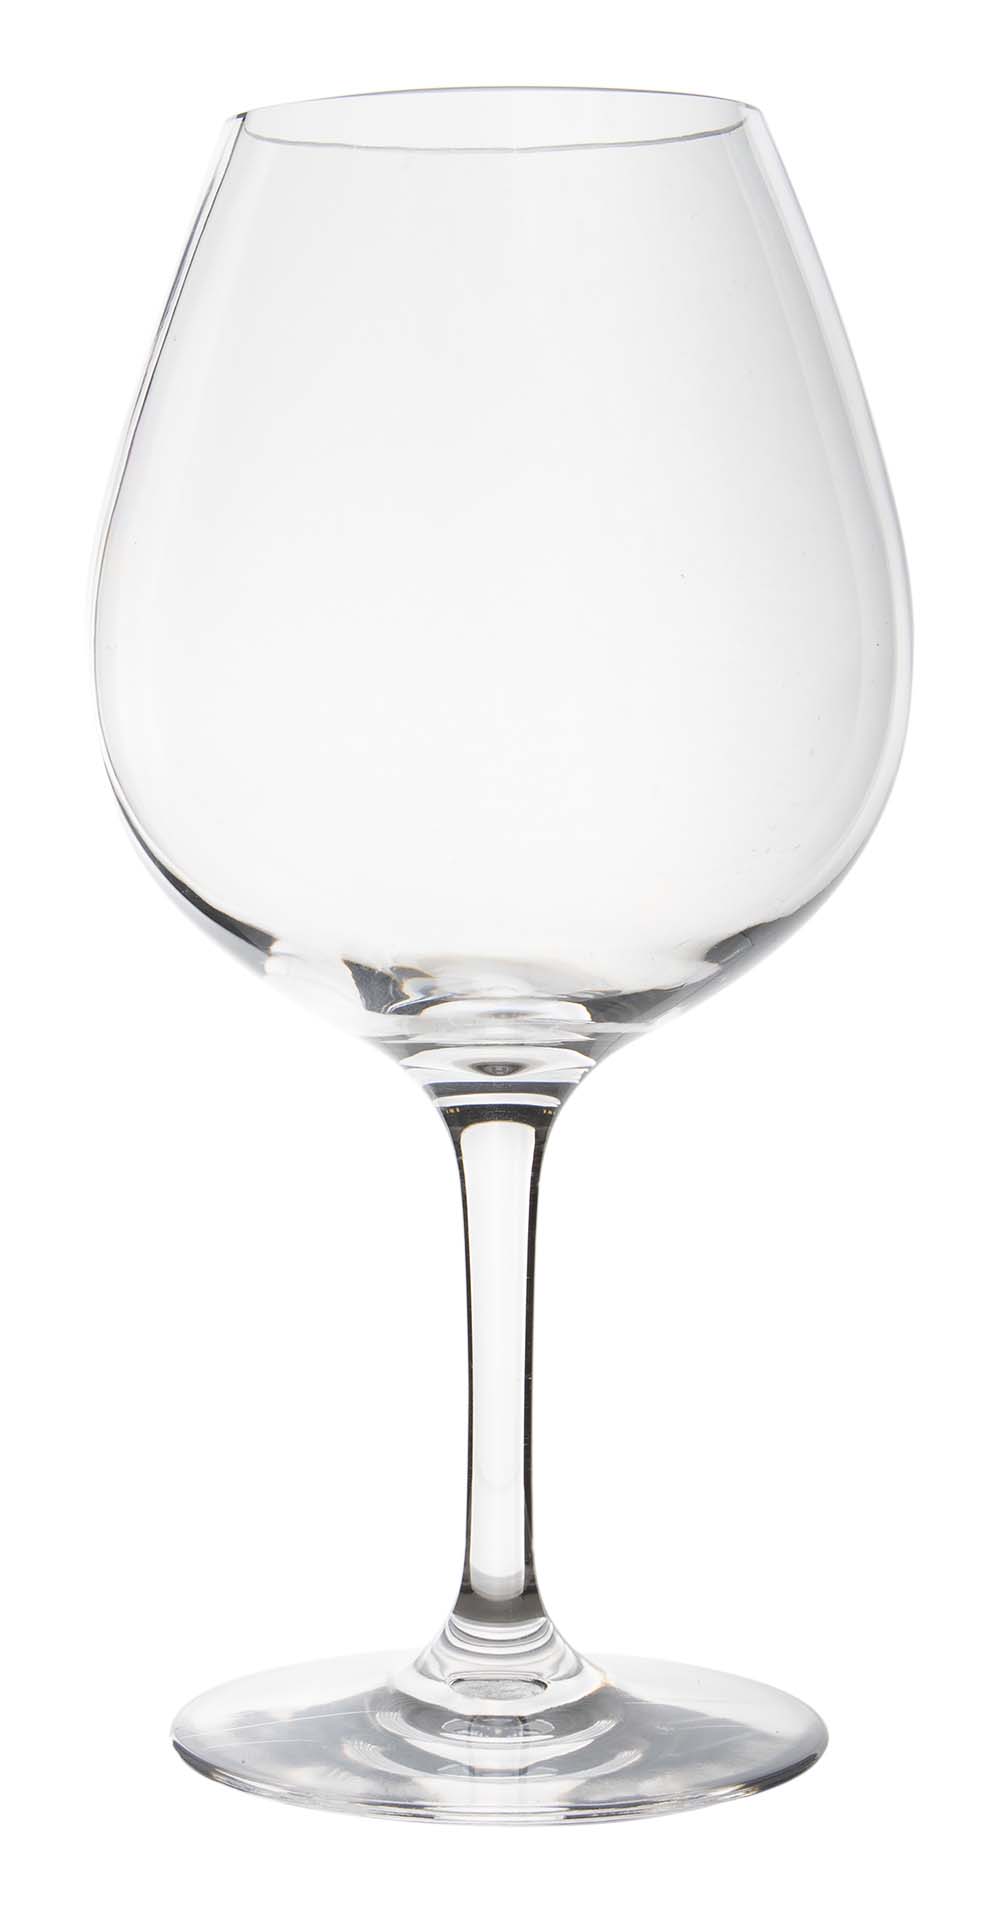 6915155 Een rode wijnglas uit de Linea line collectie. Vrijwel onbreekbaar door hoogwaardig MS materiaal. Bestaat uit een set van 2 stuks. Zeer gemakkelijk te reinigen en langdurig te gebruiken, wat het glas erg duurzaam maakt. Daarnaast is het rode wijnglas erg lichtgewicht en krasbestendig. Inhoud: 680 ml.